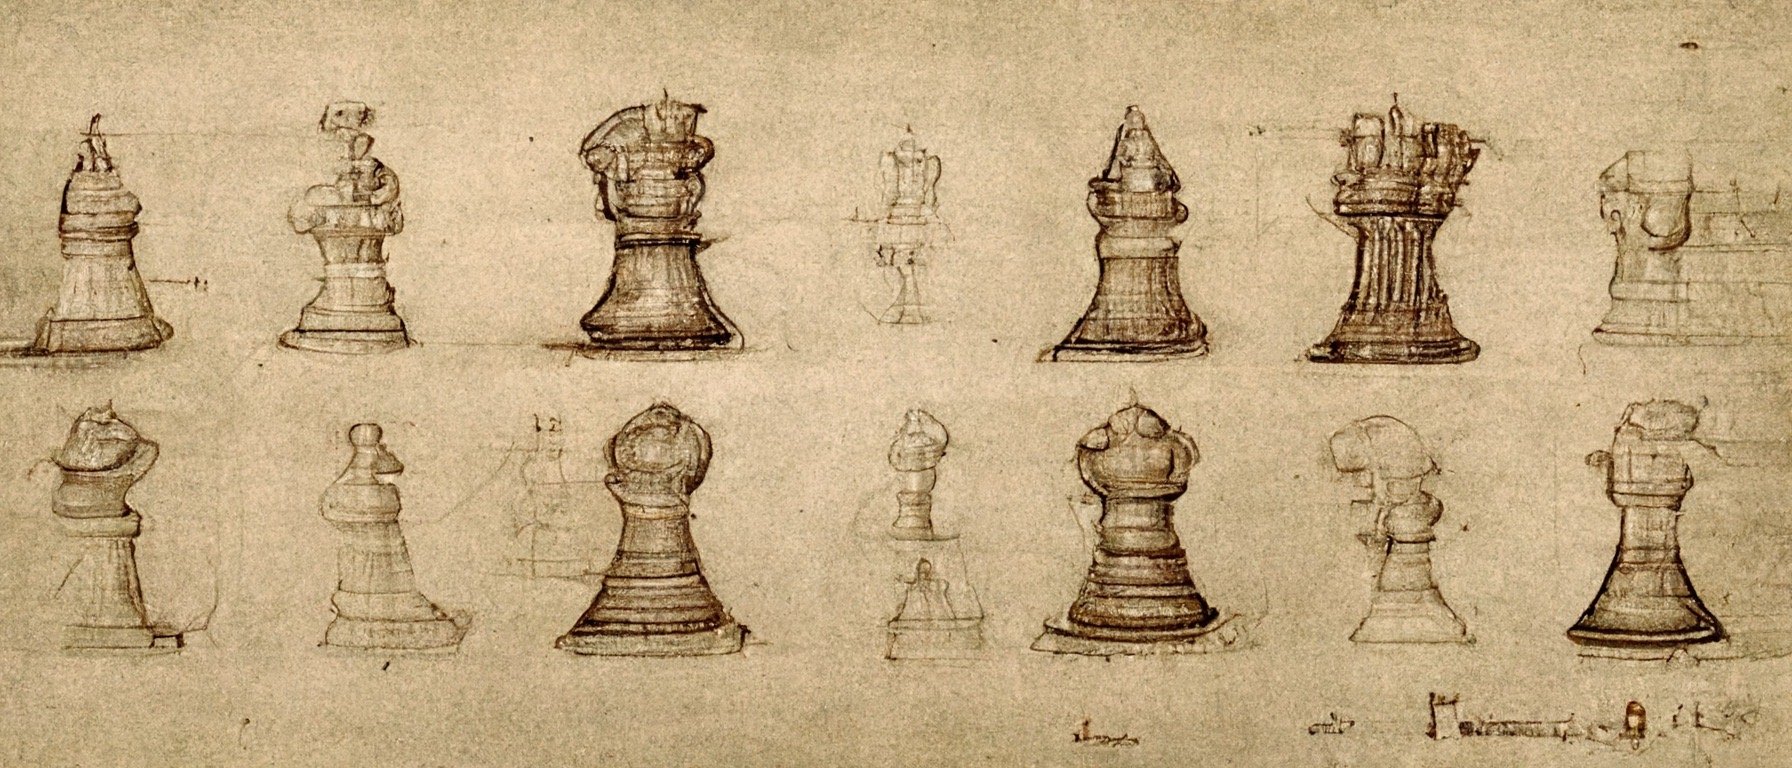 a30f7c90-a9f7-447f-9c1f-64b9e07a707a_S3RAPH_detailed_plans_for_chess_in_the_style_of_Leonardo_da_Vinci_drawn_in_pencil_w_2048_h_858.JPG